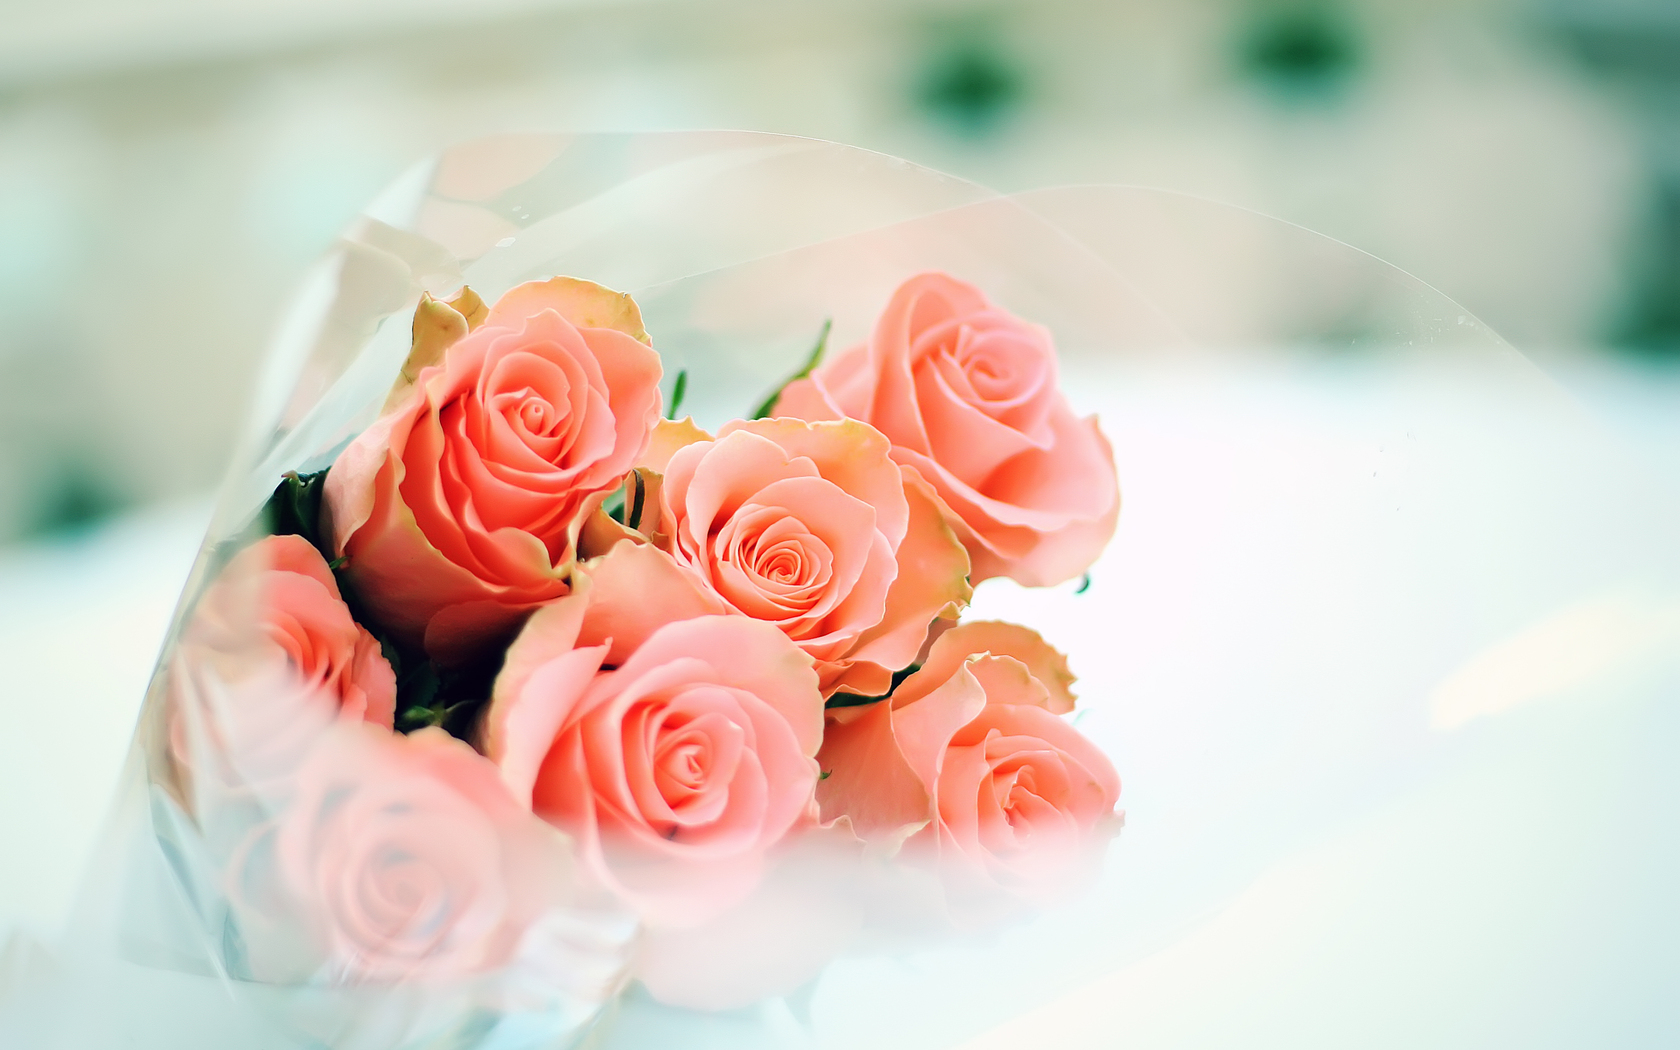 Cute Rose Bouquet